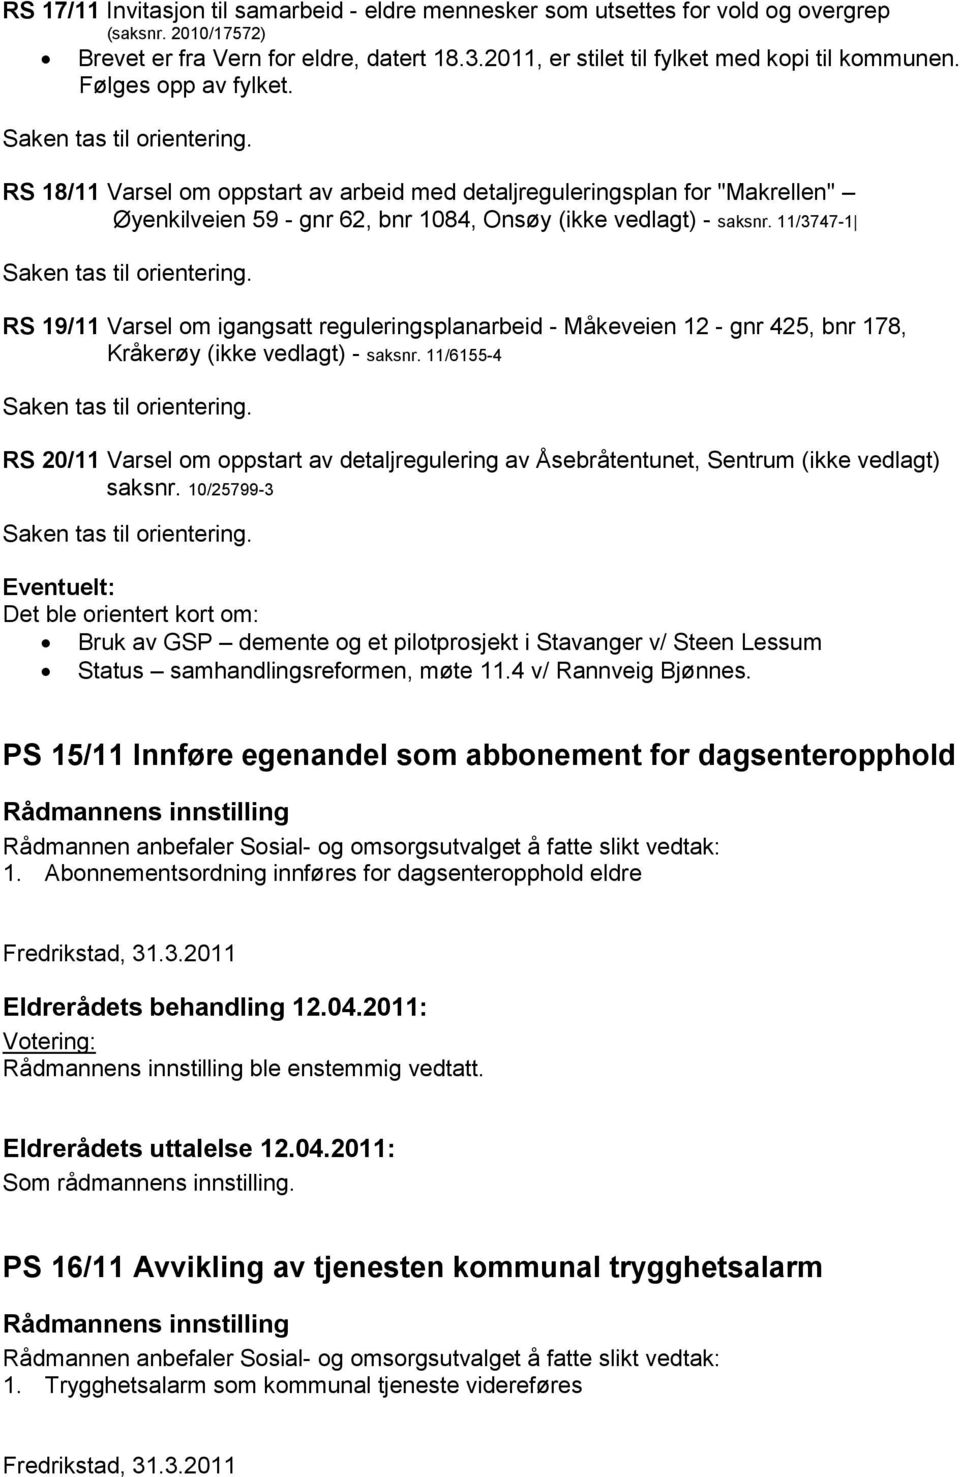 11/3747-1 RS 19/11 Varsel om igangsatt reguleringsplanarbeid - åkeveien 12 - gnr 425, bnr 178, Kråkerøy (ikke vedlagt) - saksnr.